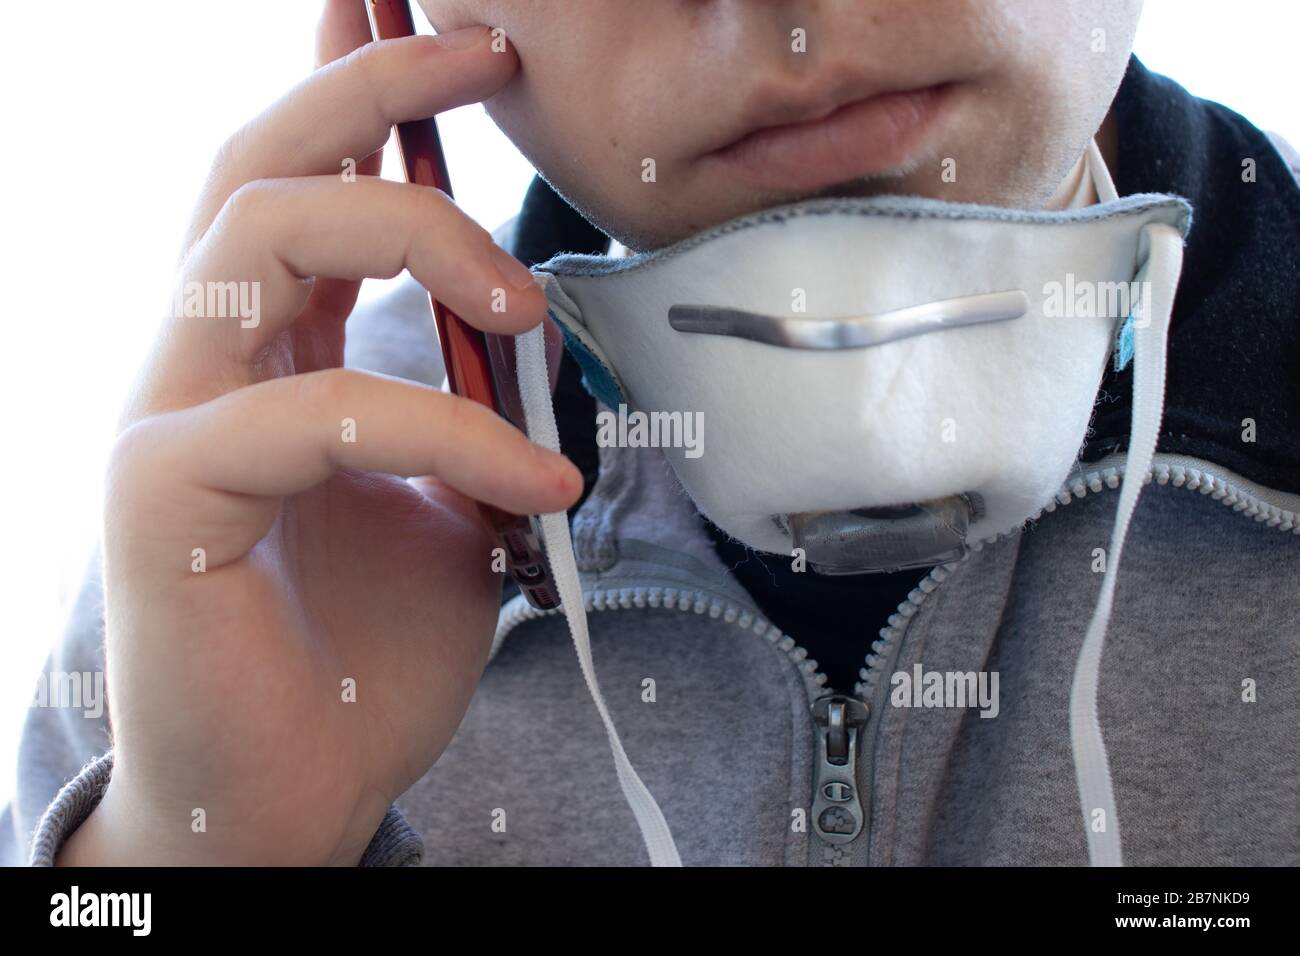 Un uomo in una maschera respiratoria facciale effettua una chiamata telefonica. Respiratore sul collo. Uomo faccia da vicino. Concetto di allarme per virus o malattie Foto Stock